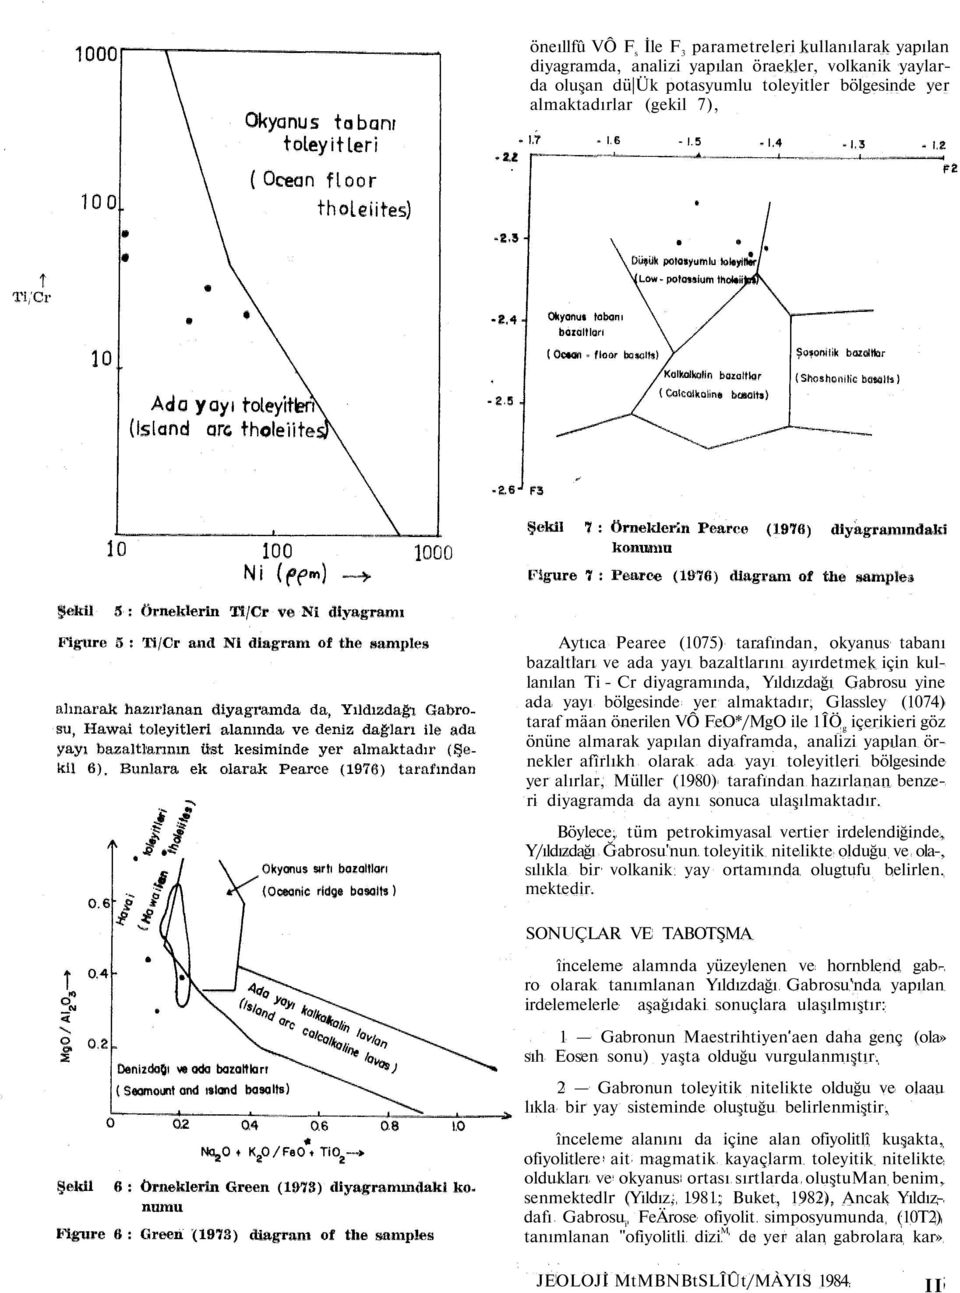 (1074) taraf mäan önerilen VÔ FeO*/MgO ile 1ÎÖ g içerikieri göz önüne almarak yapılan diyaframda, analizi yapılan örnekler afîrlıkh olarak ada yayı toleyitleri bölgesinde yer alırlar, Müller (1980)